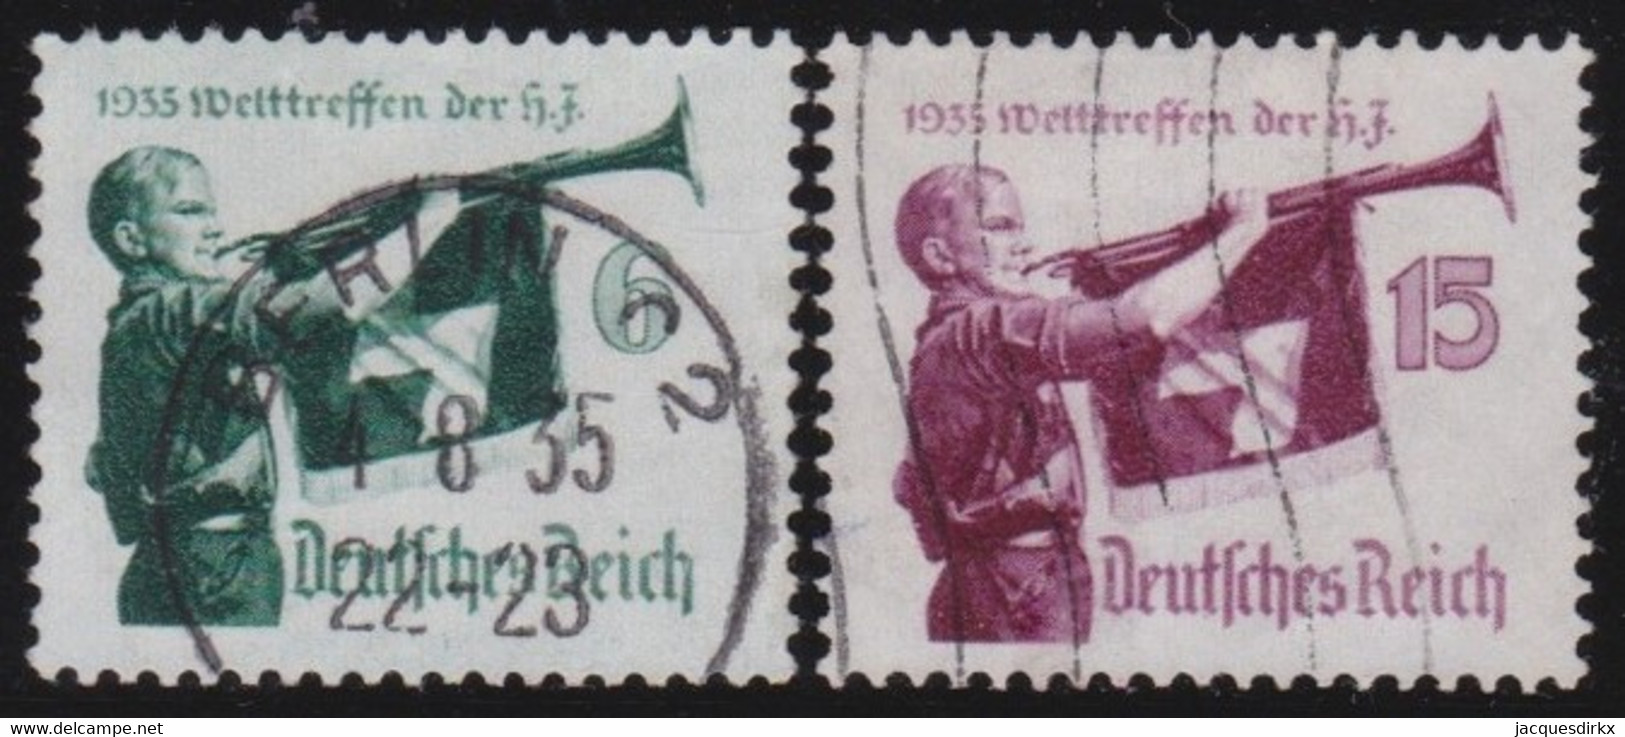 Deutsches Reich   .    Michel      .   584/585     .      O        .     Gestempelt - Gebraucht